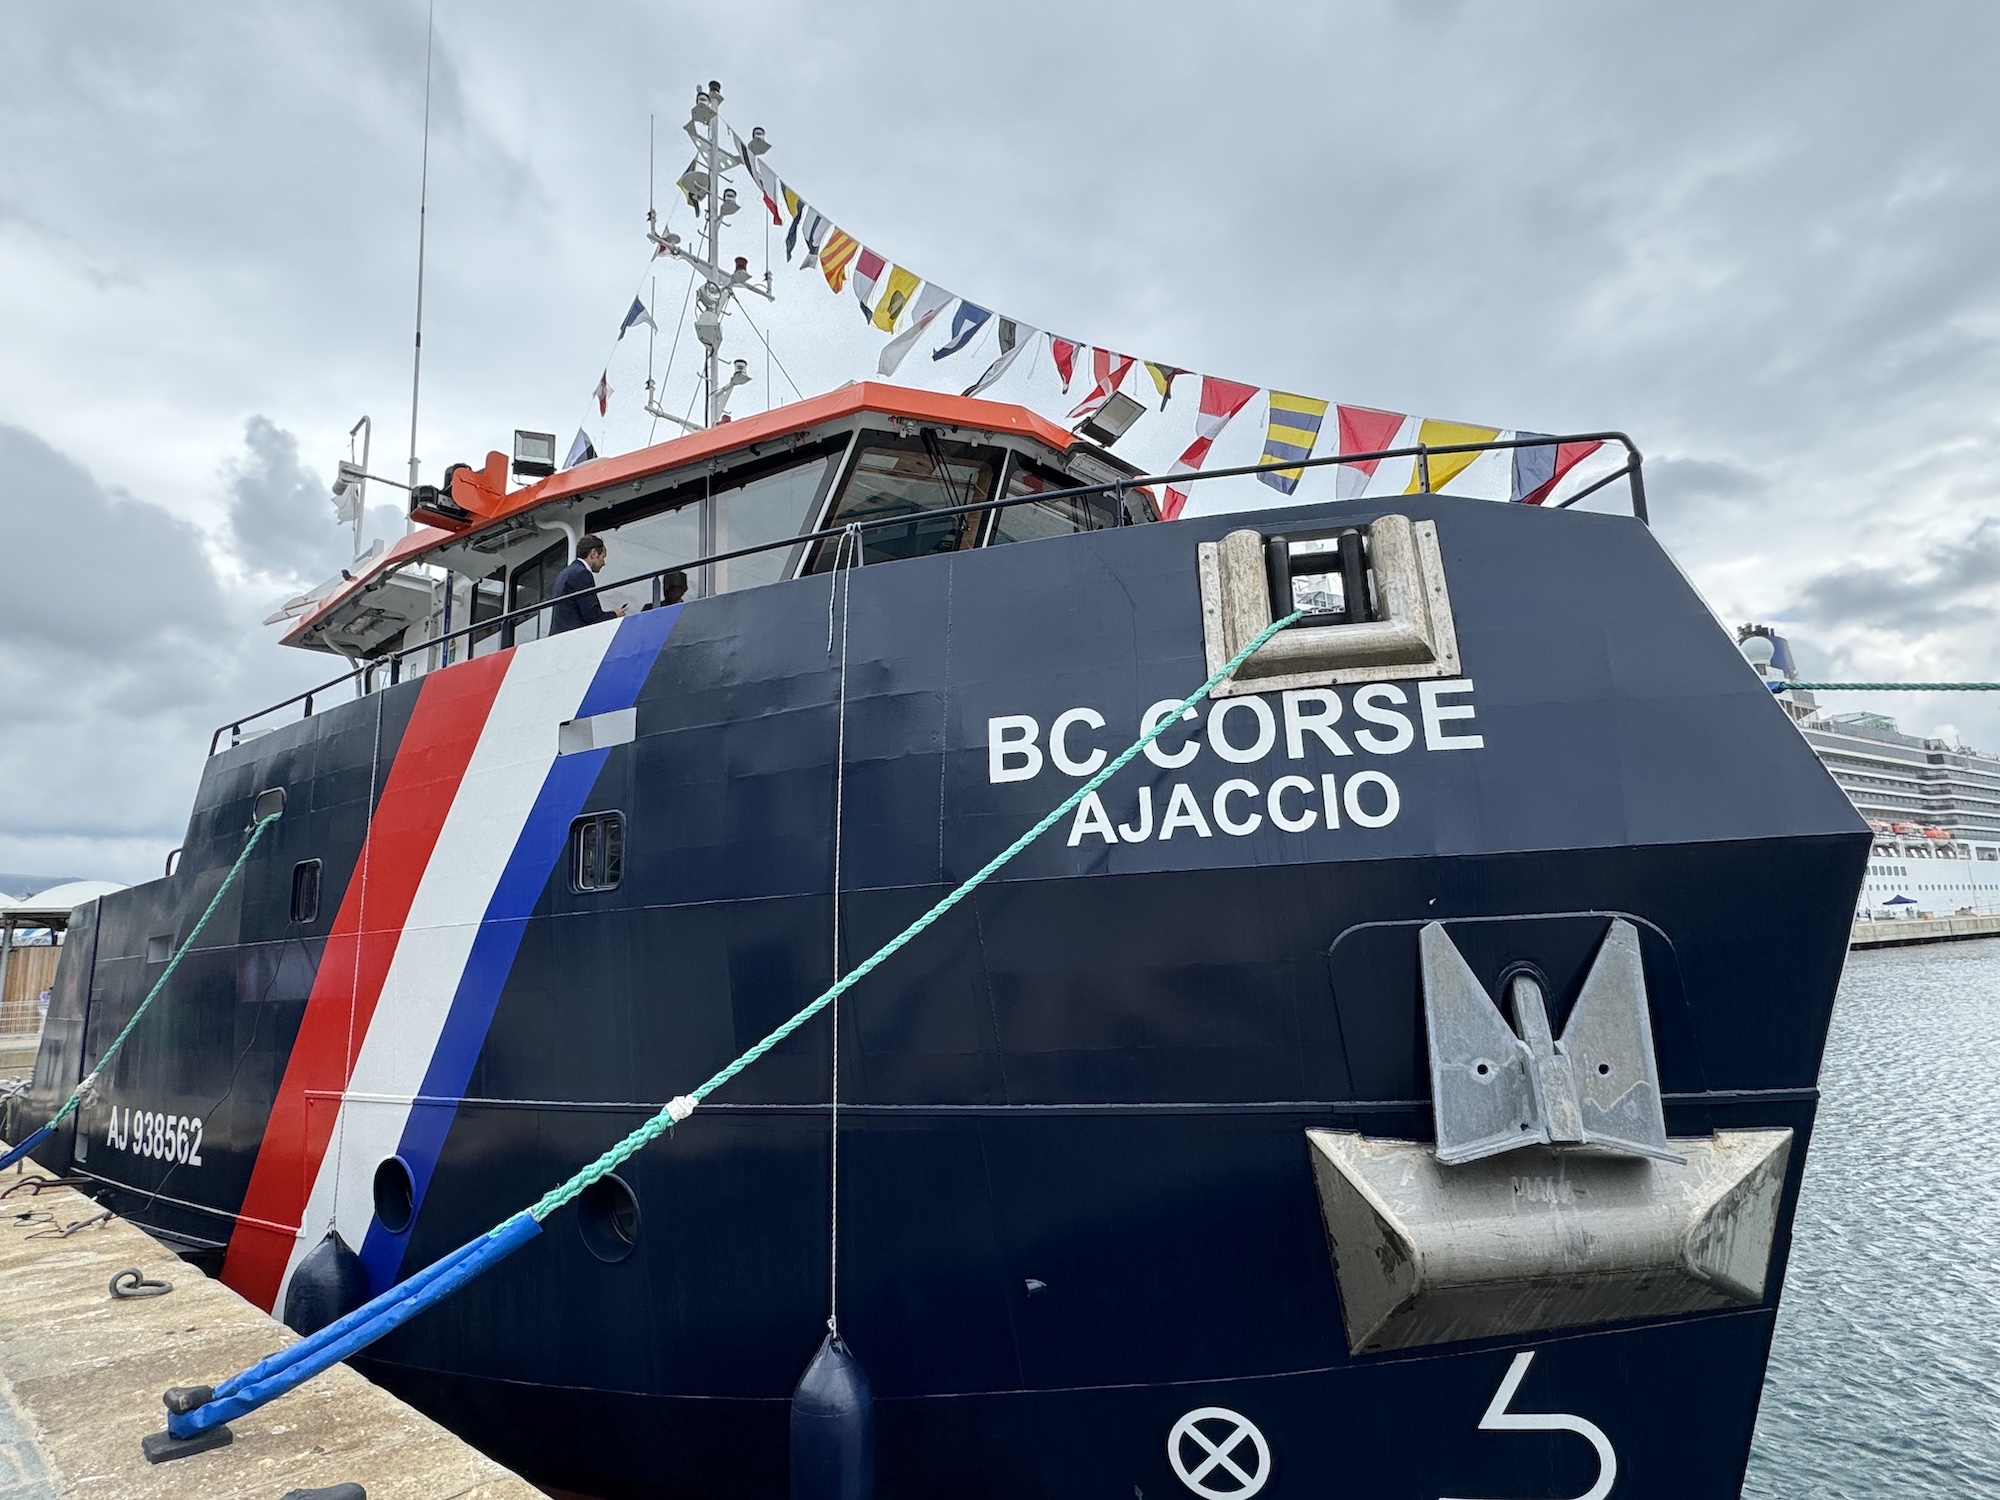 Le BC Corse a rejoint l'armement des Phares et Balises à Ajaccio fin 2023